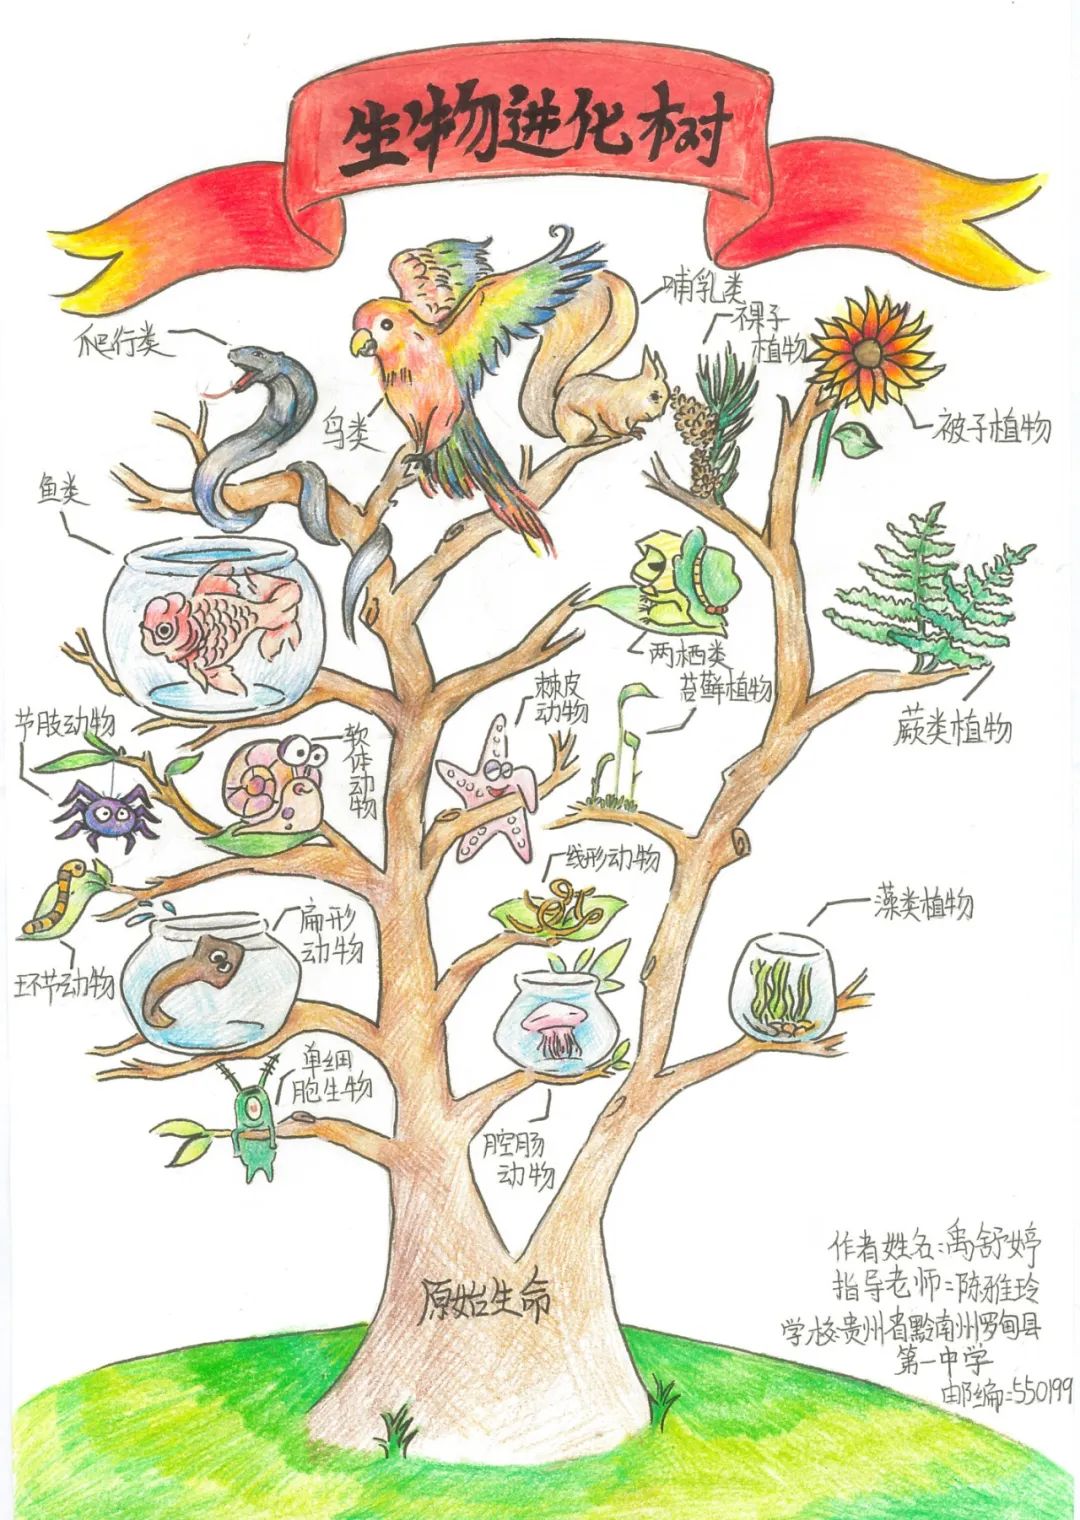 学生生物学 生物进化树示意图